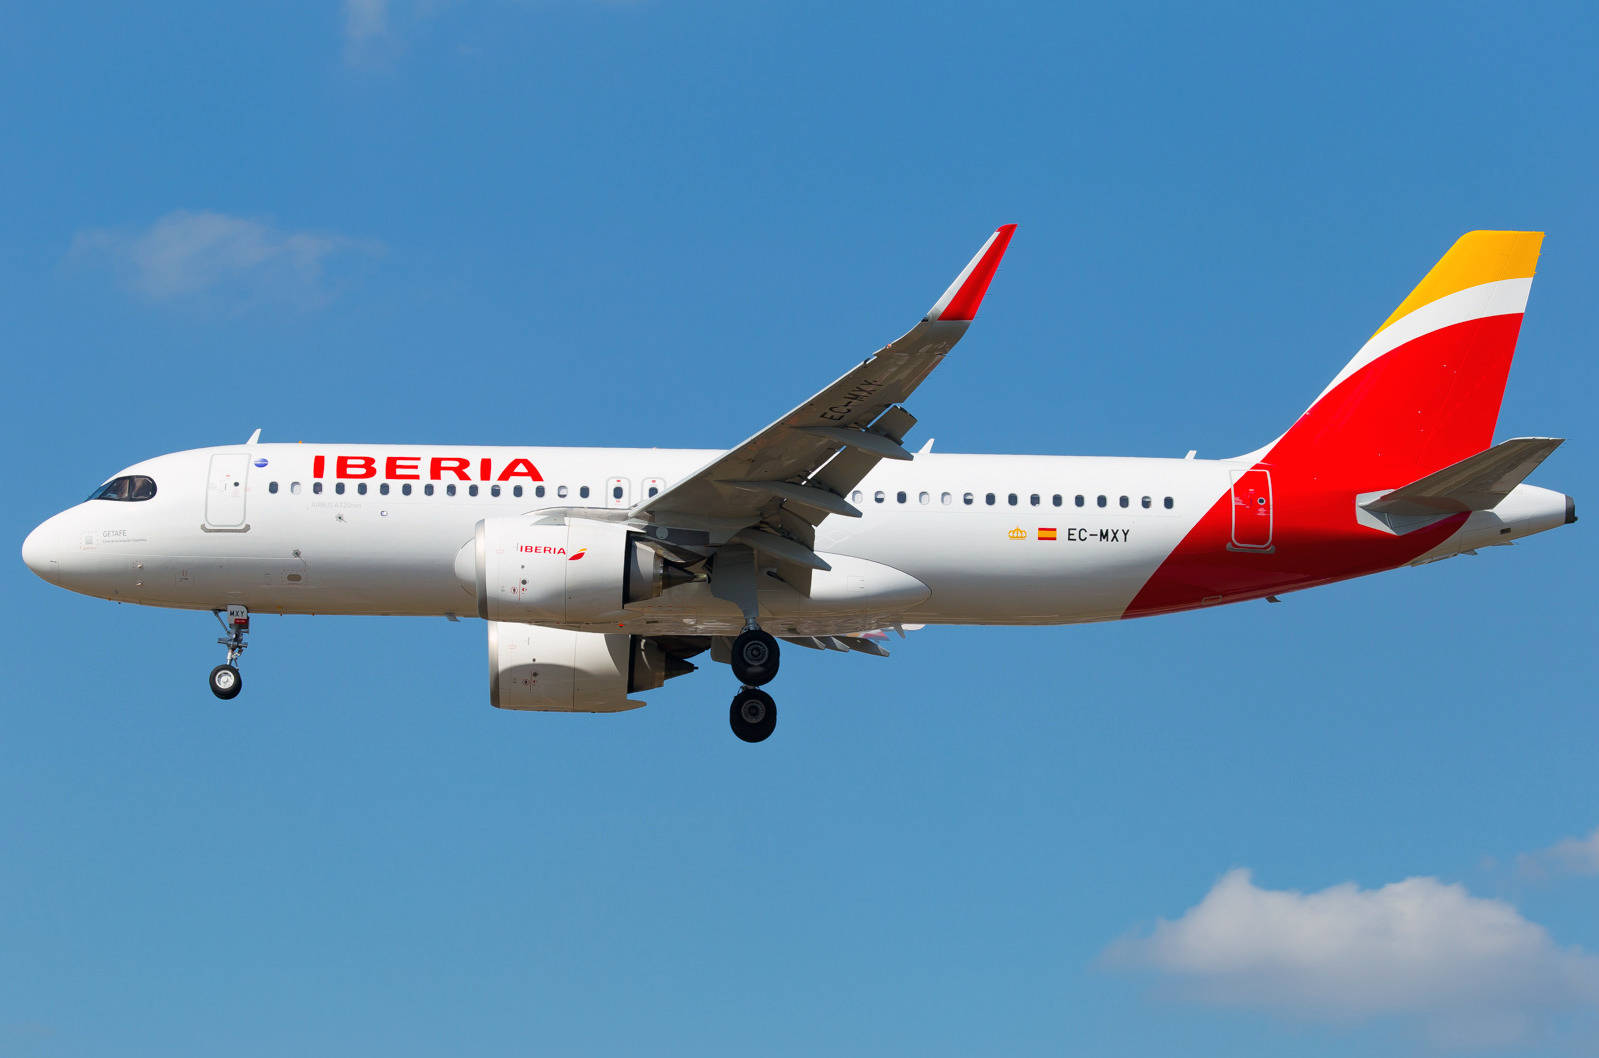 Aeroplanodi Iberia Airlines In Volo Stabile. Sfondo